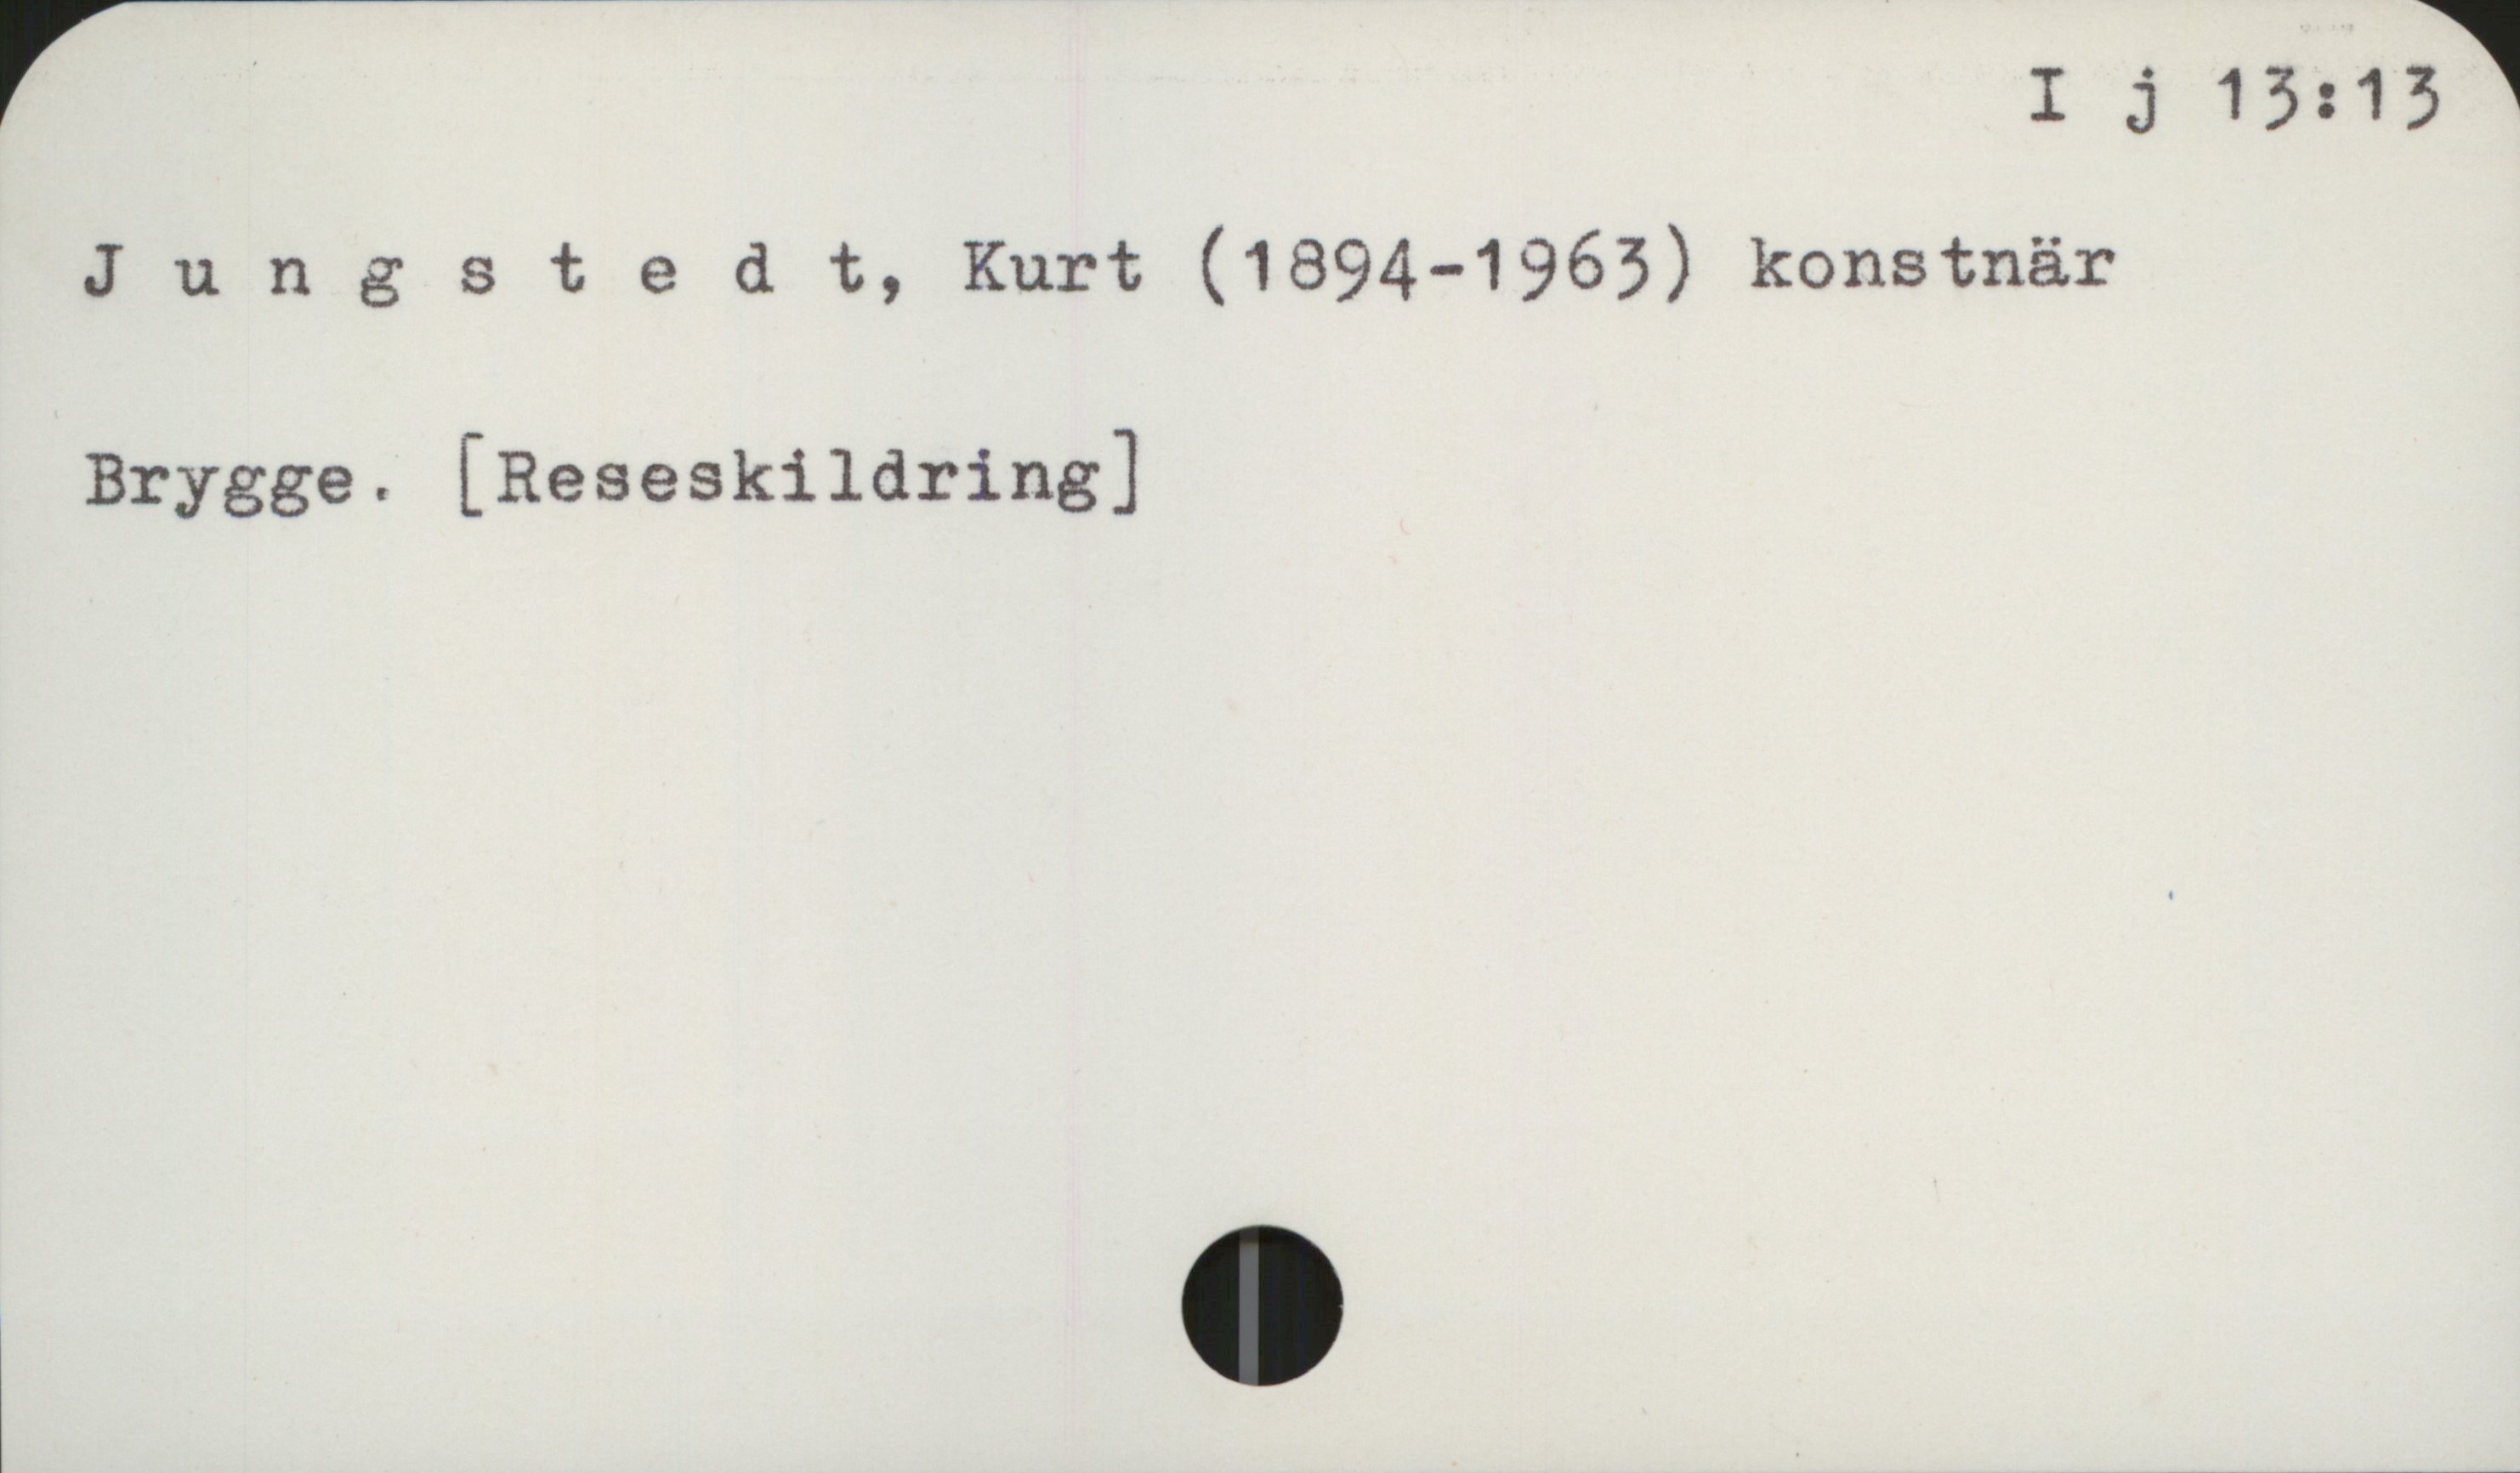 Jungstedt, Kurt (1894-1963) I j 13: 13

Jungstedt, Kurt (1894-1963) konstnär

Brygge. [Reseskildring]